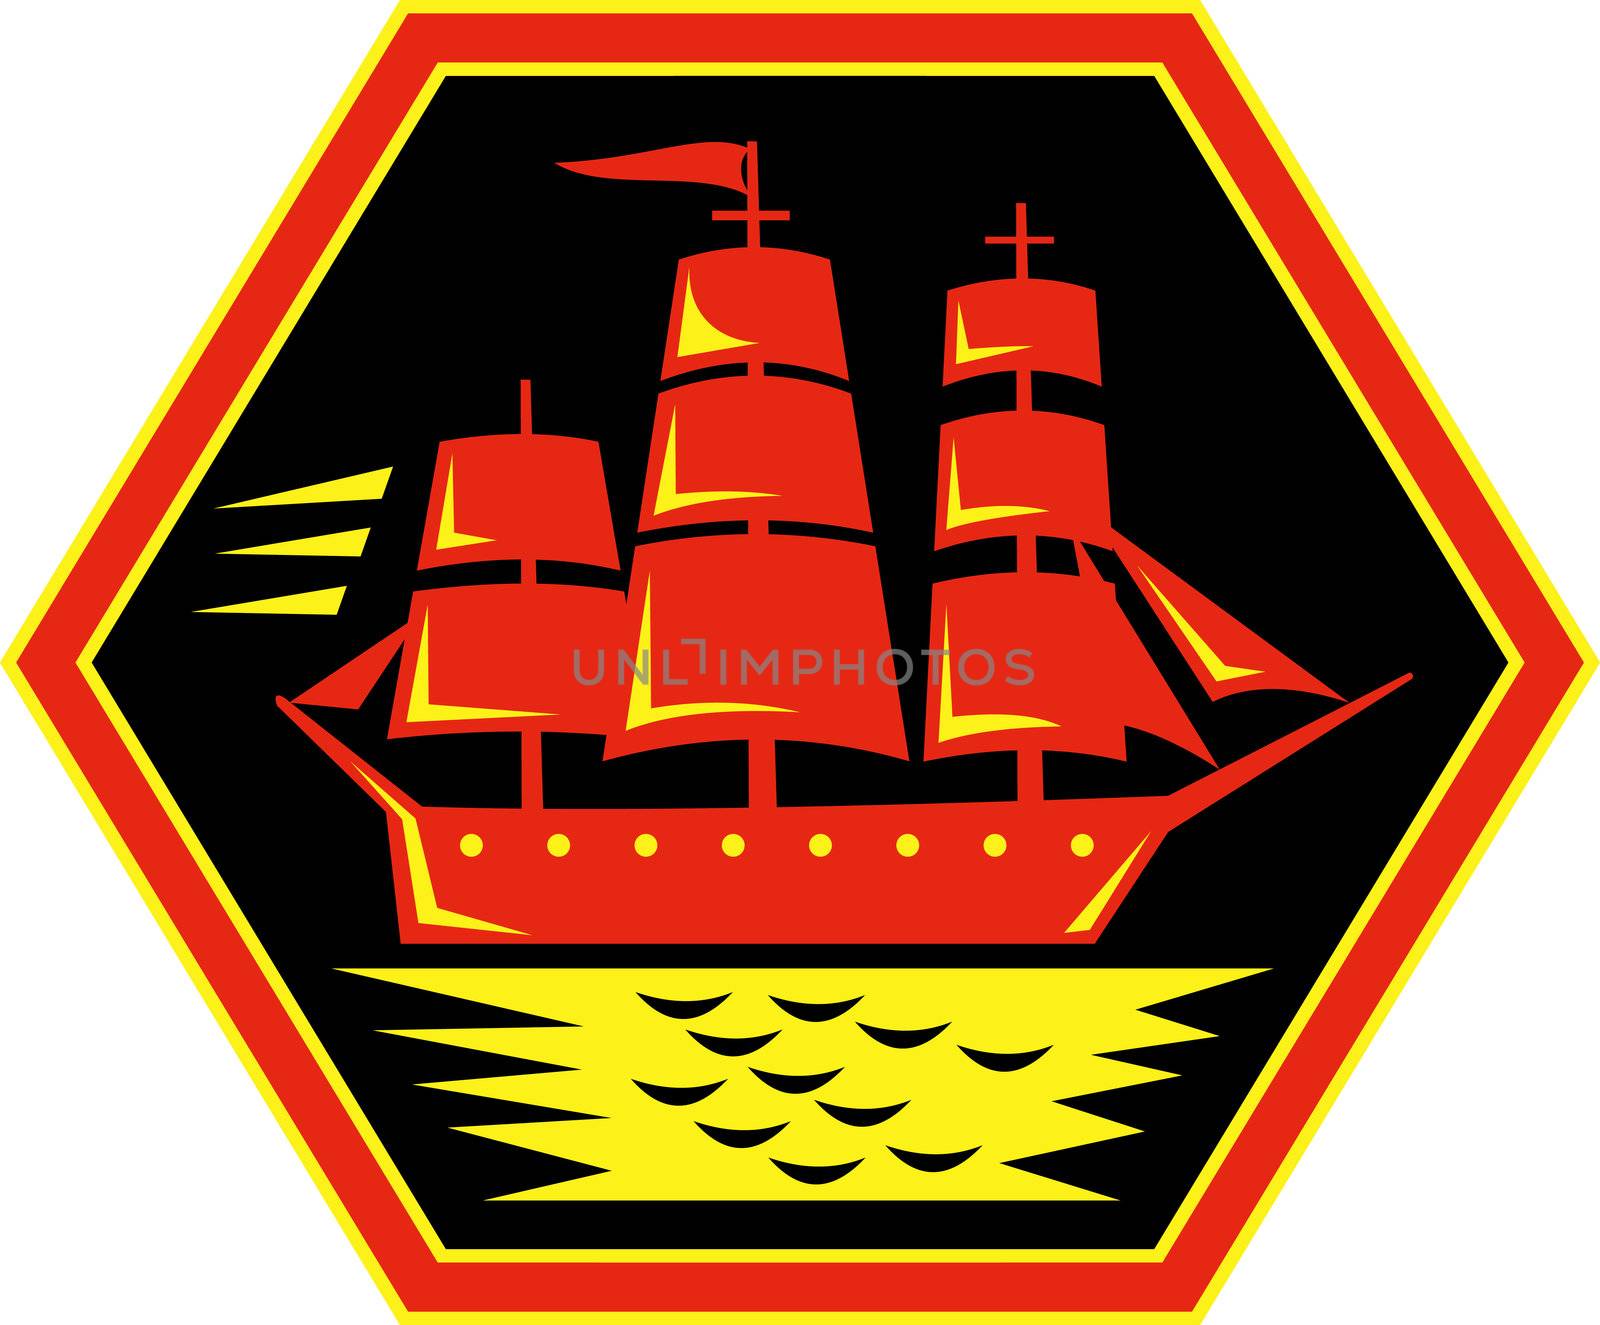 sailing ship or clipper icon by patrimonio